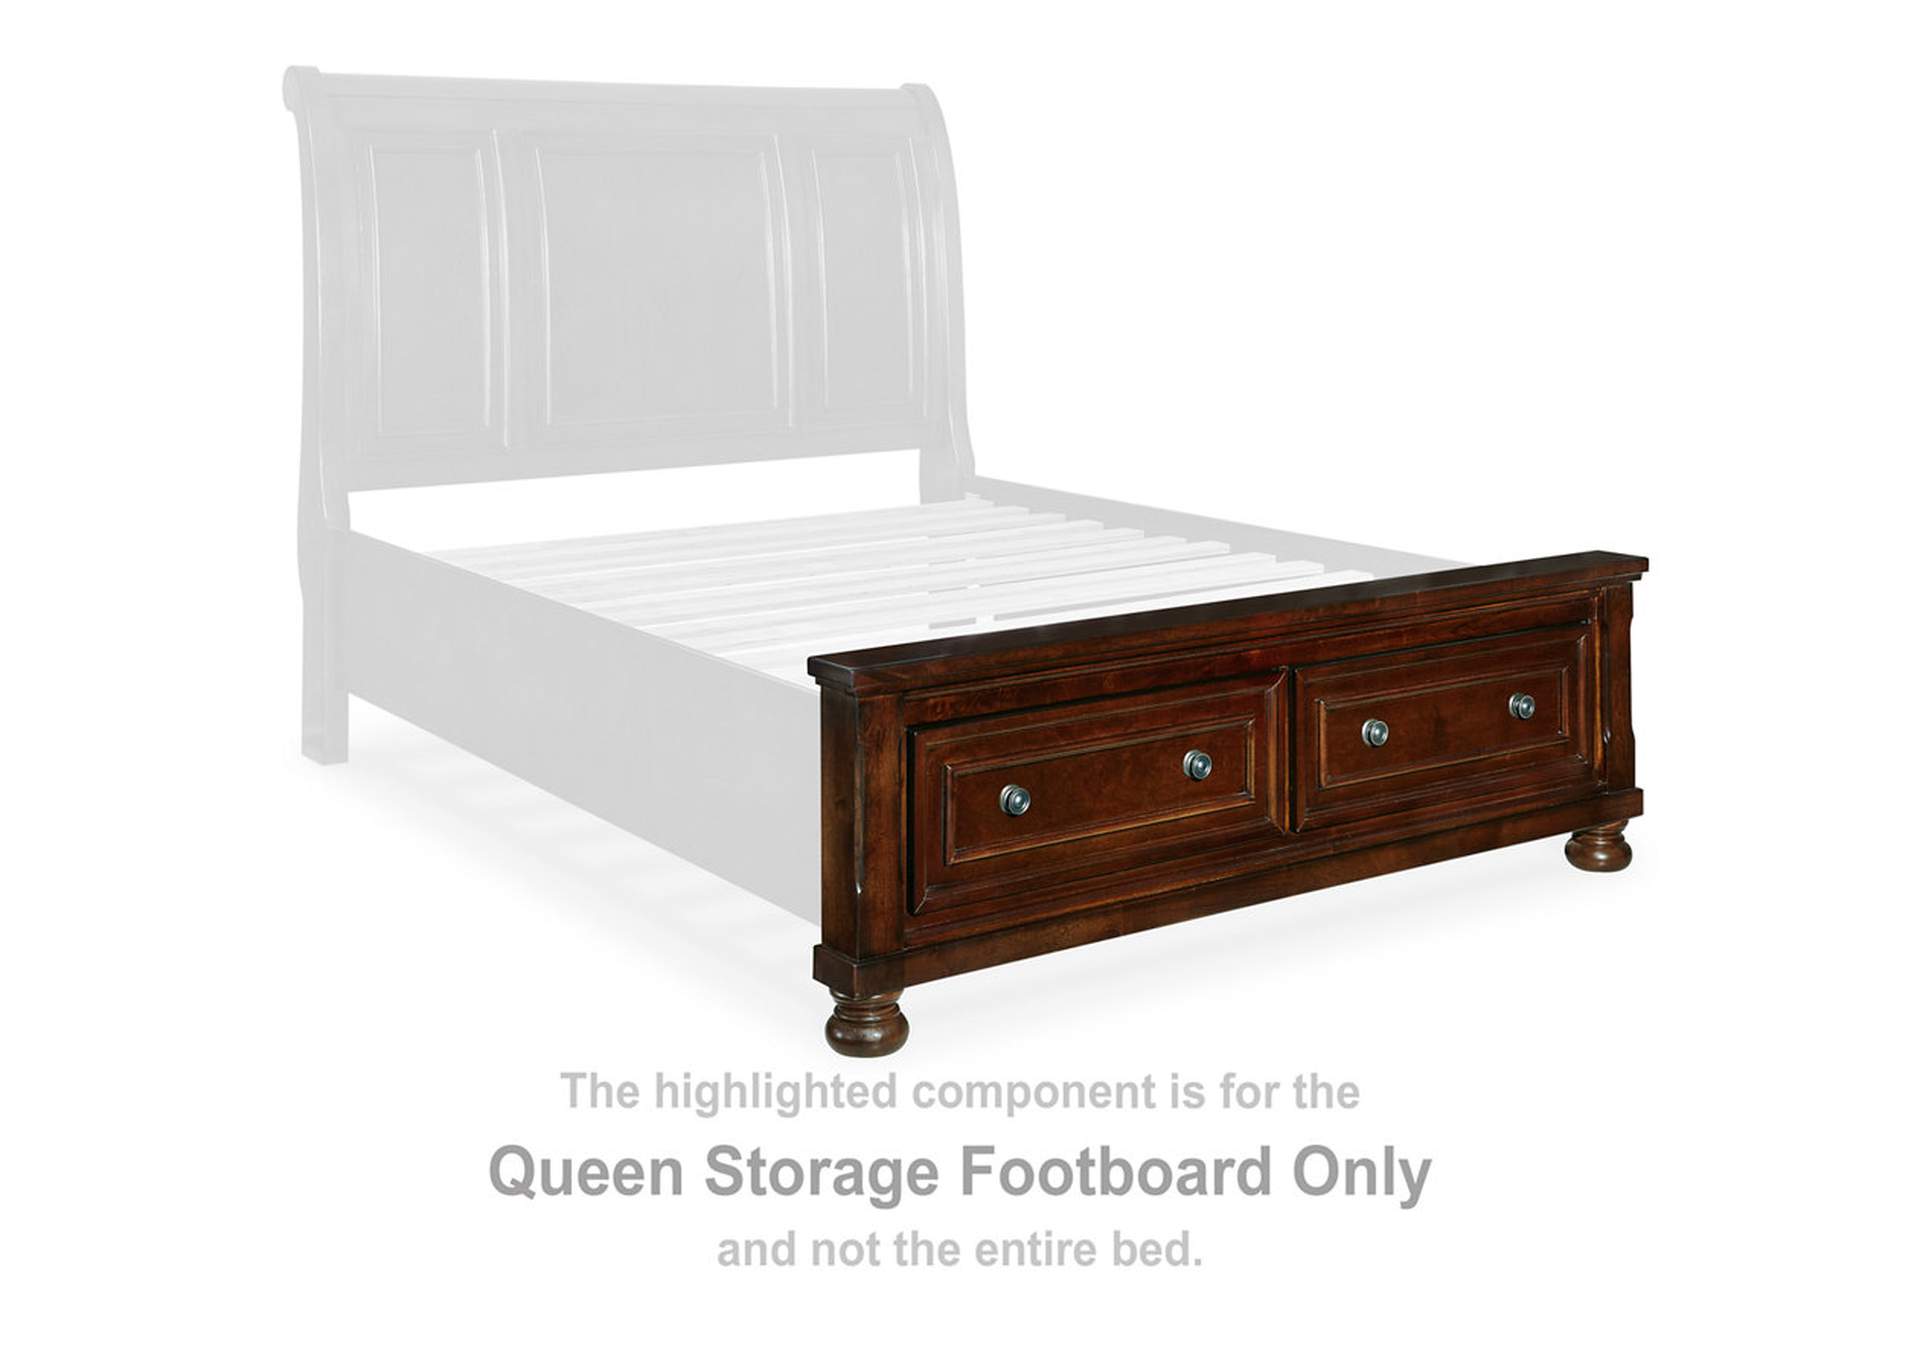 Porter Queen Sleigh Bed, Dresser and Mirror,Millennium